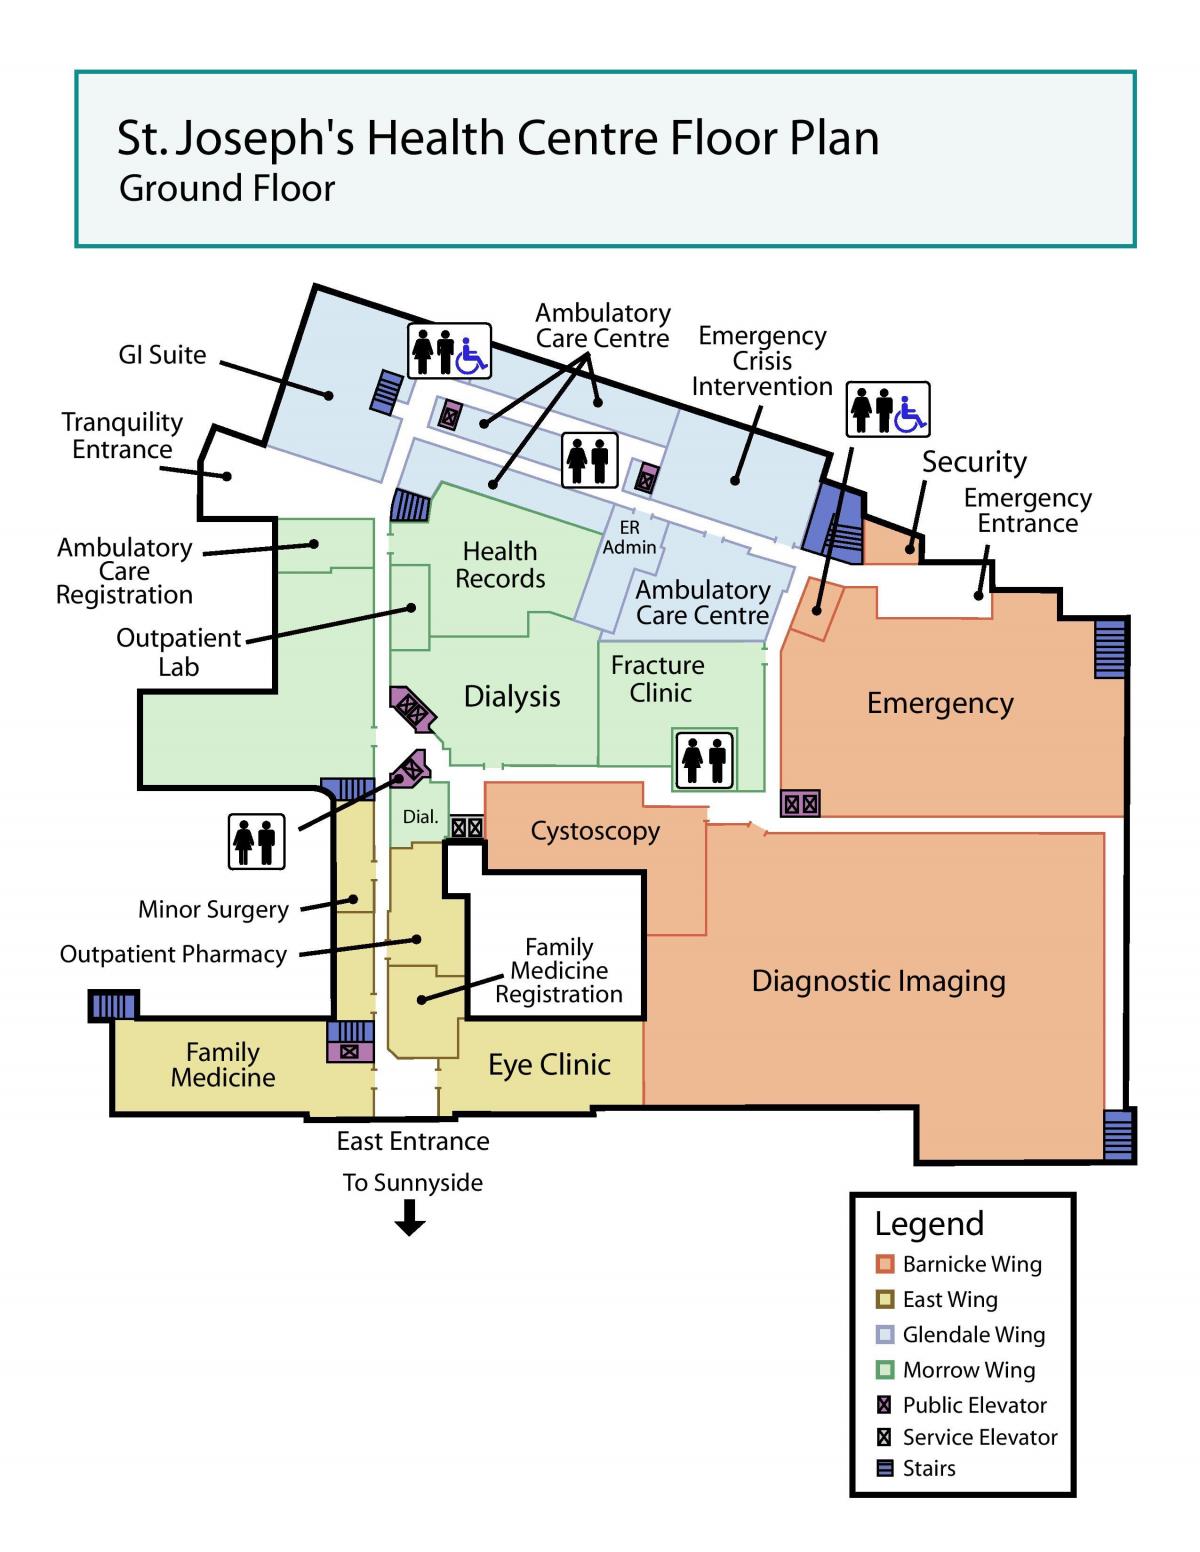 Mapa de San José del Centro de Salud de la planta baja